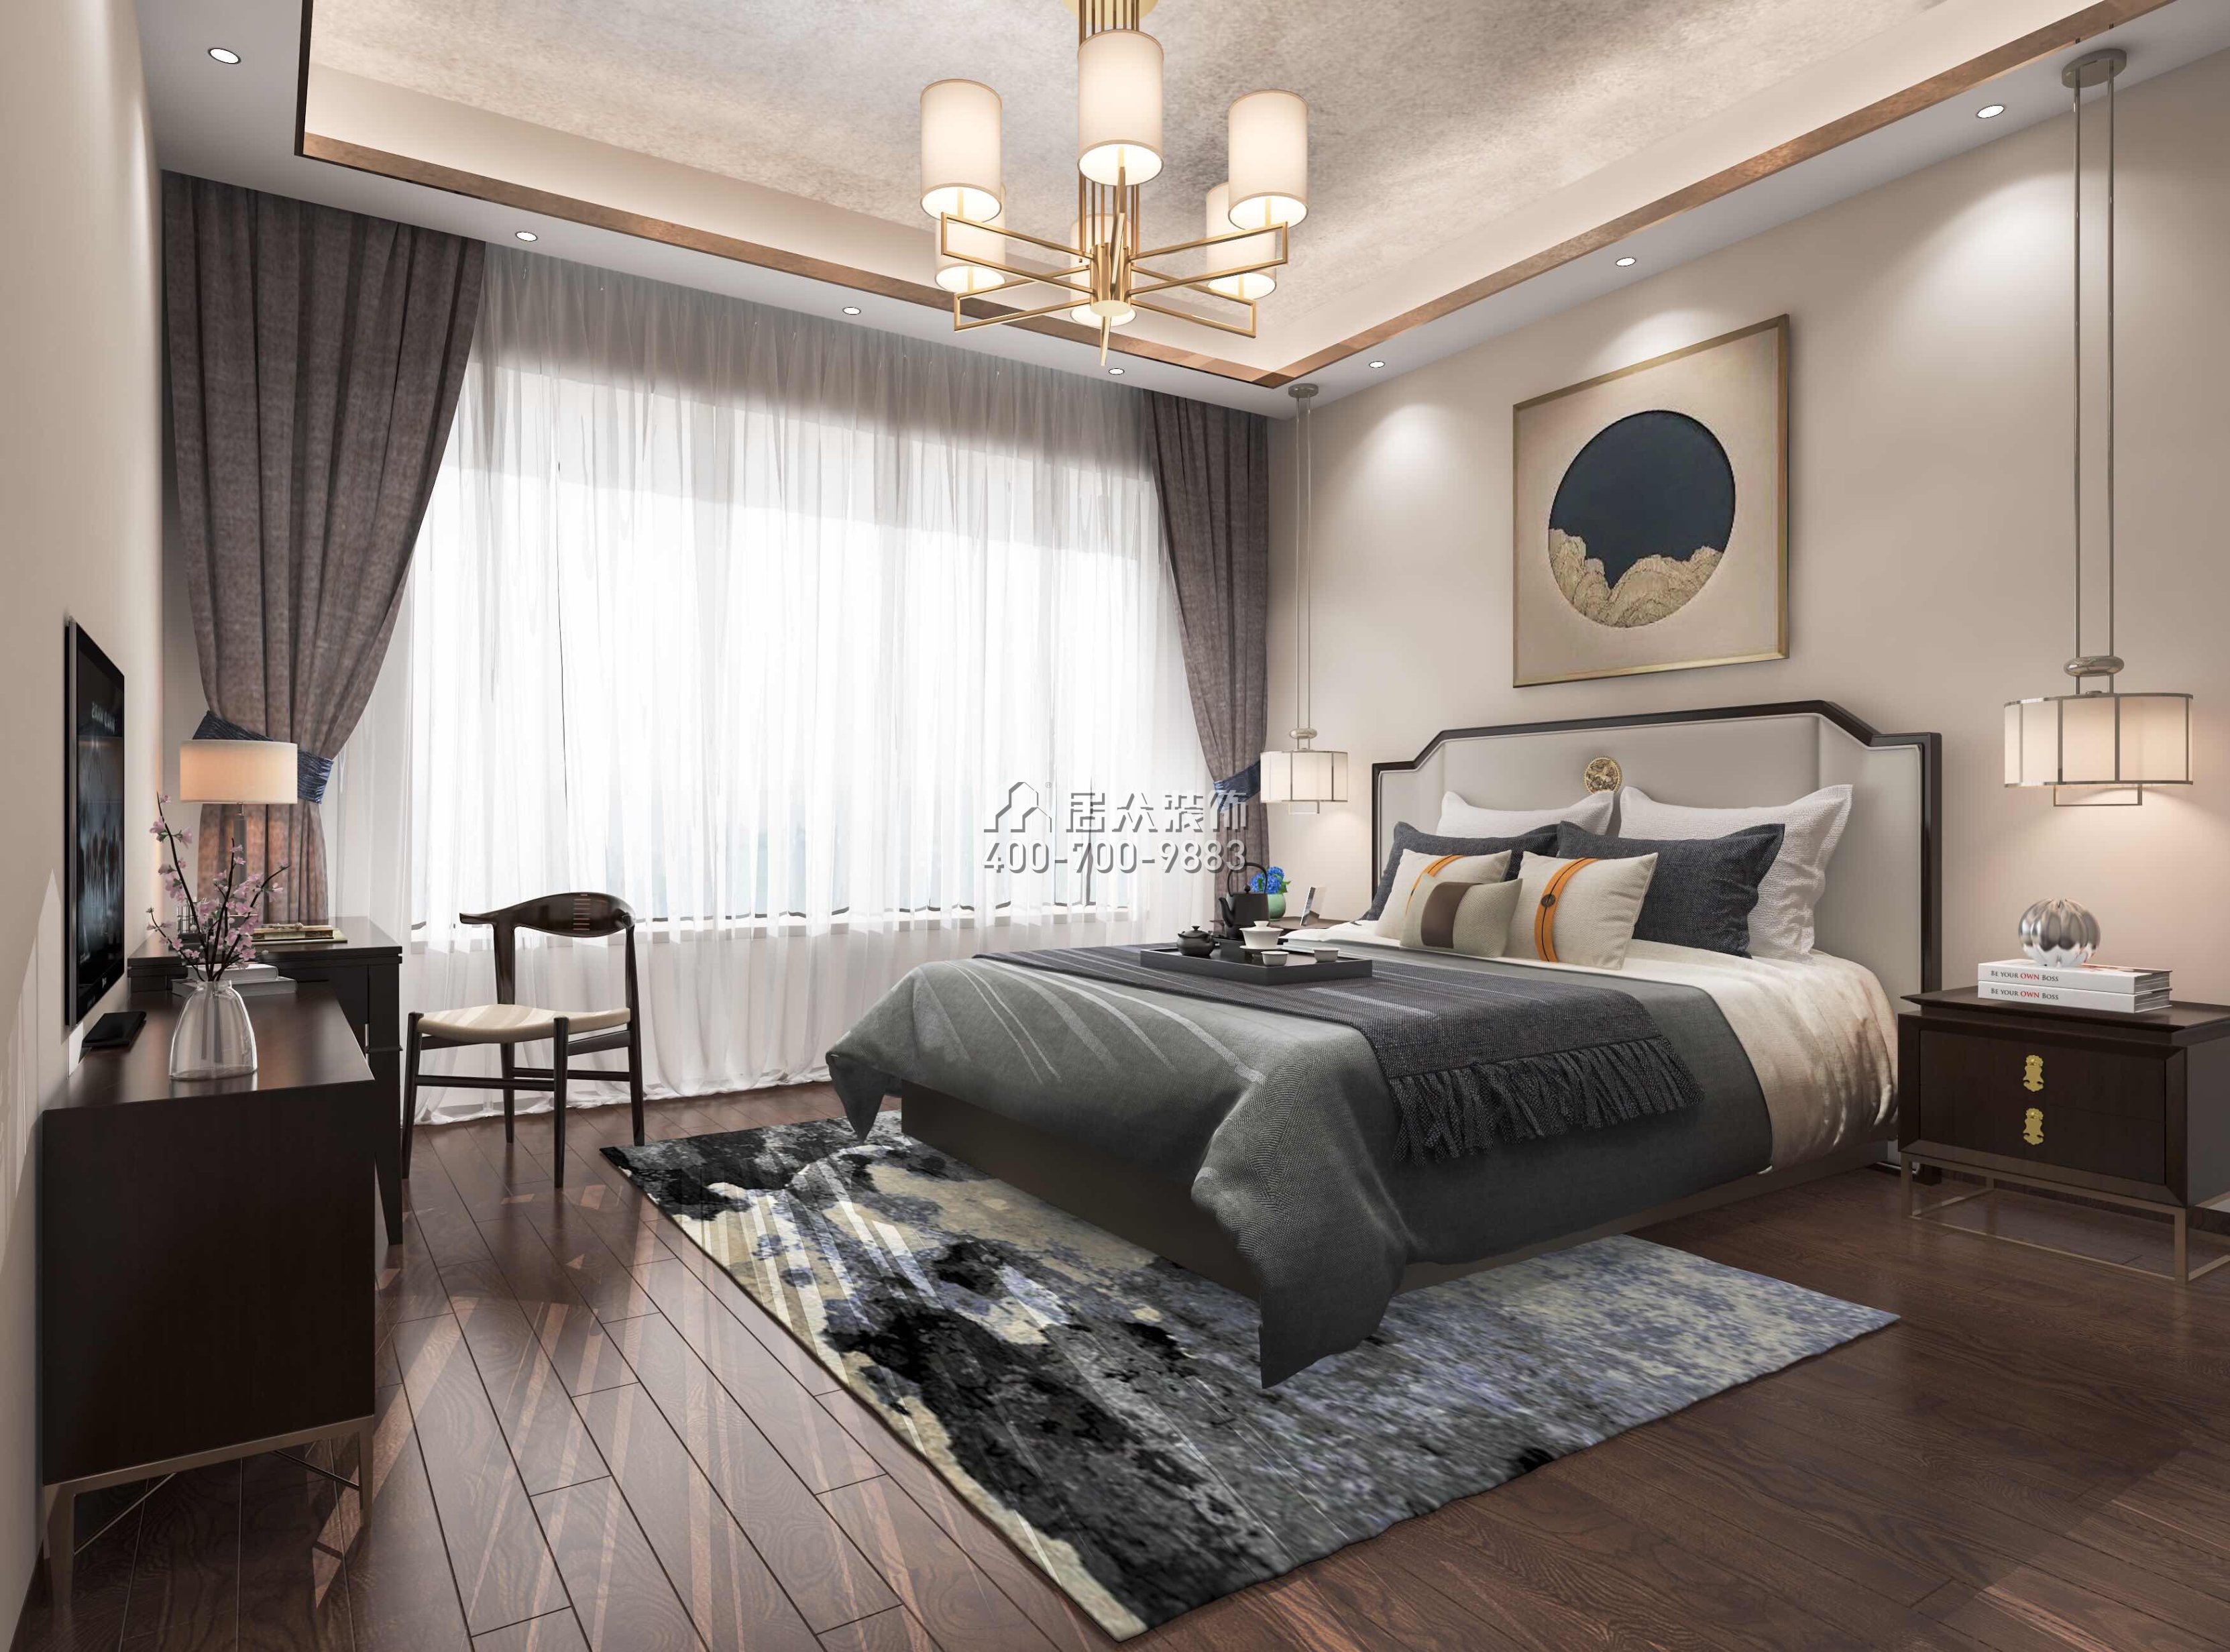 华发新城226平方米中式风格平层户型卧室装修效果图